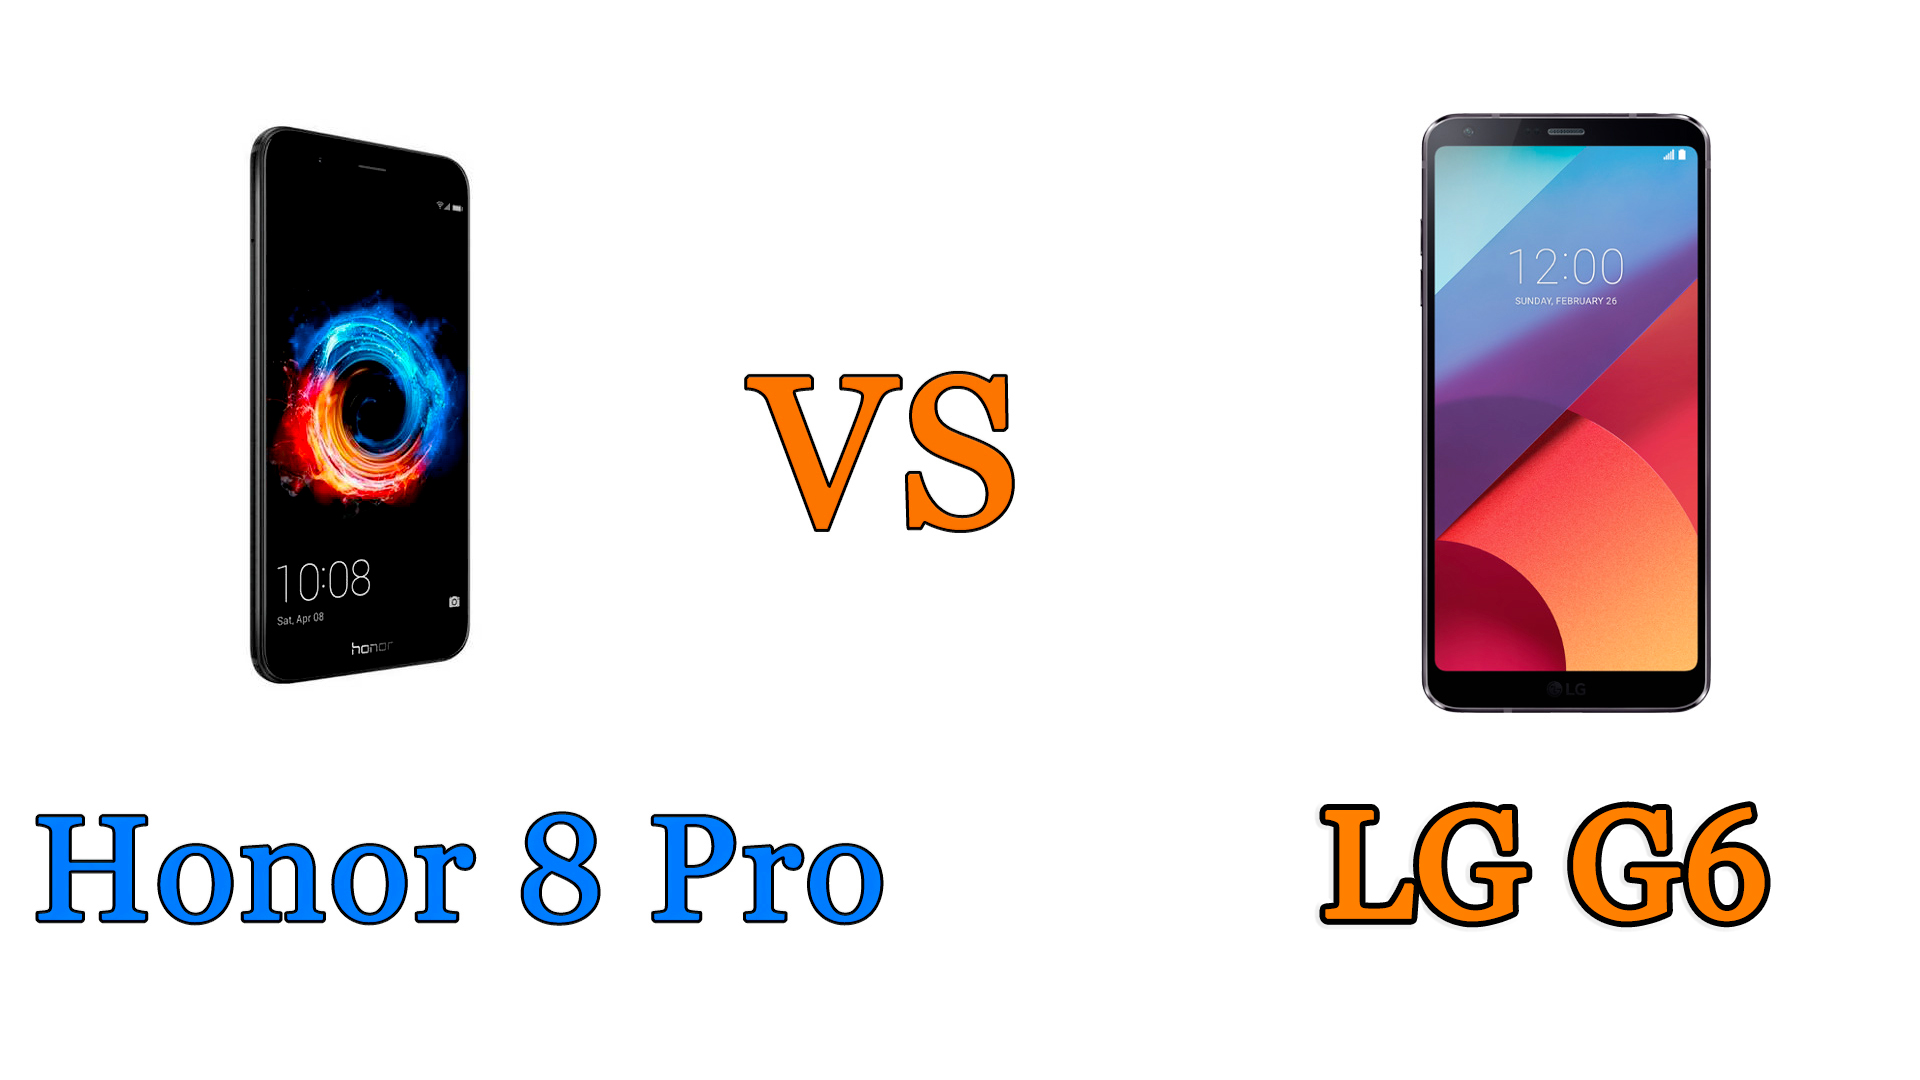 honor 8 pro vs LG G6